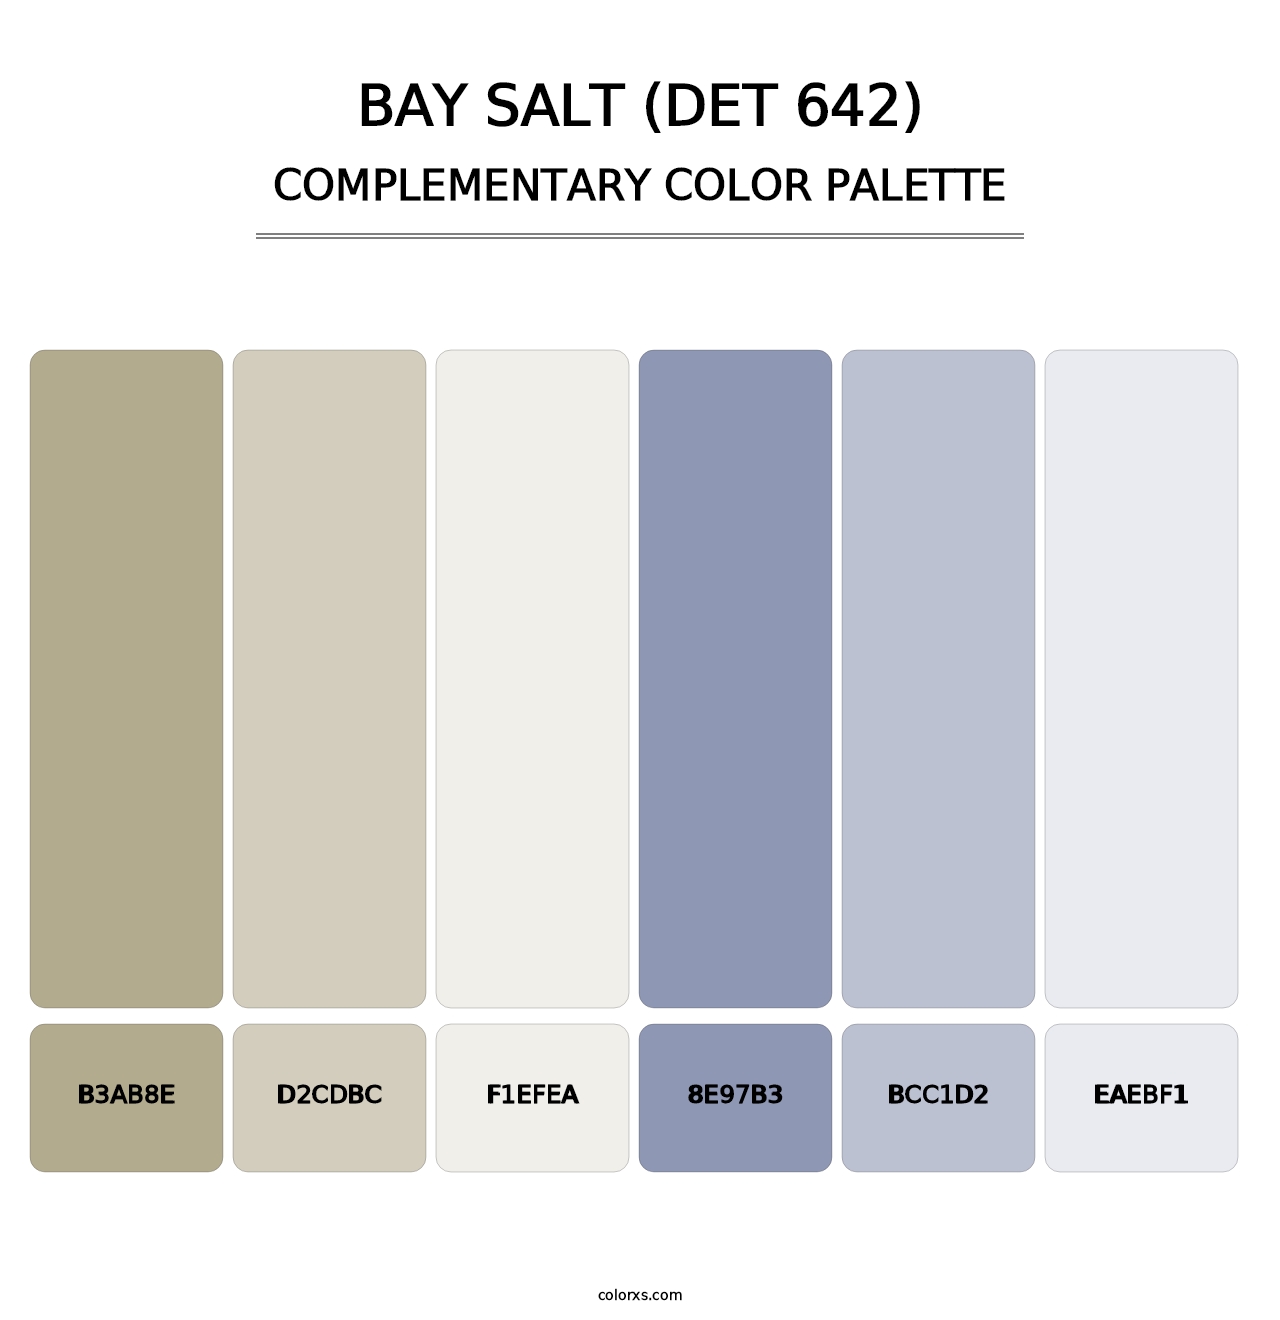 Bay Salt (DET 642) - Complementary Color Palette